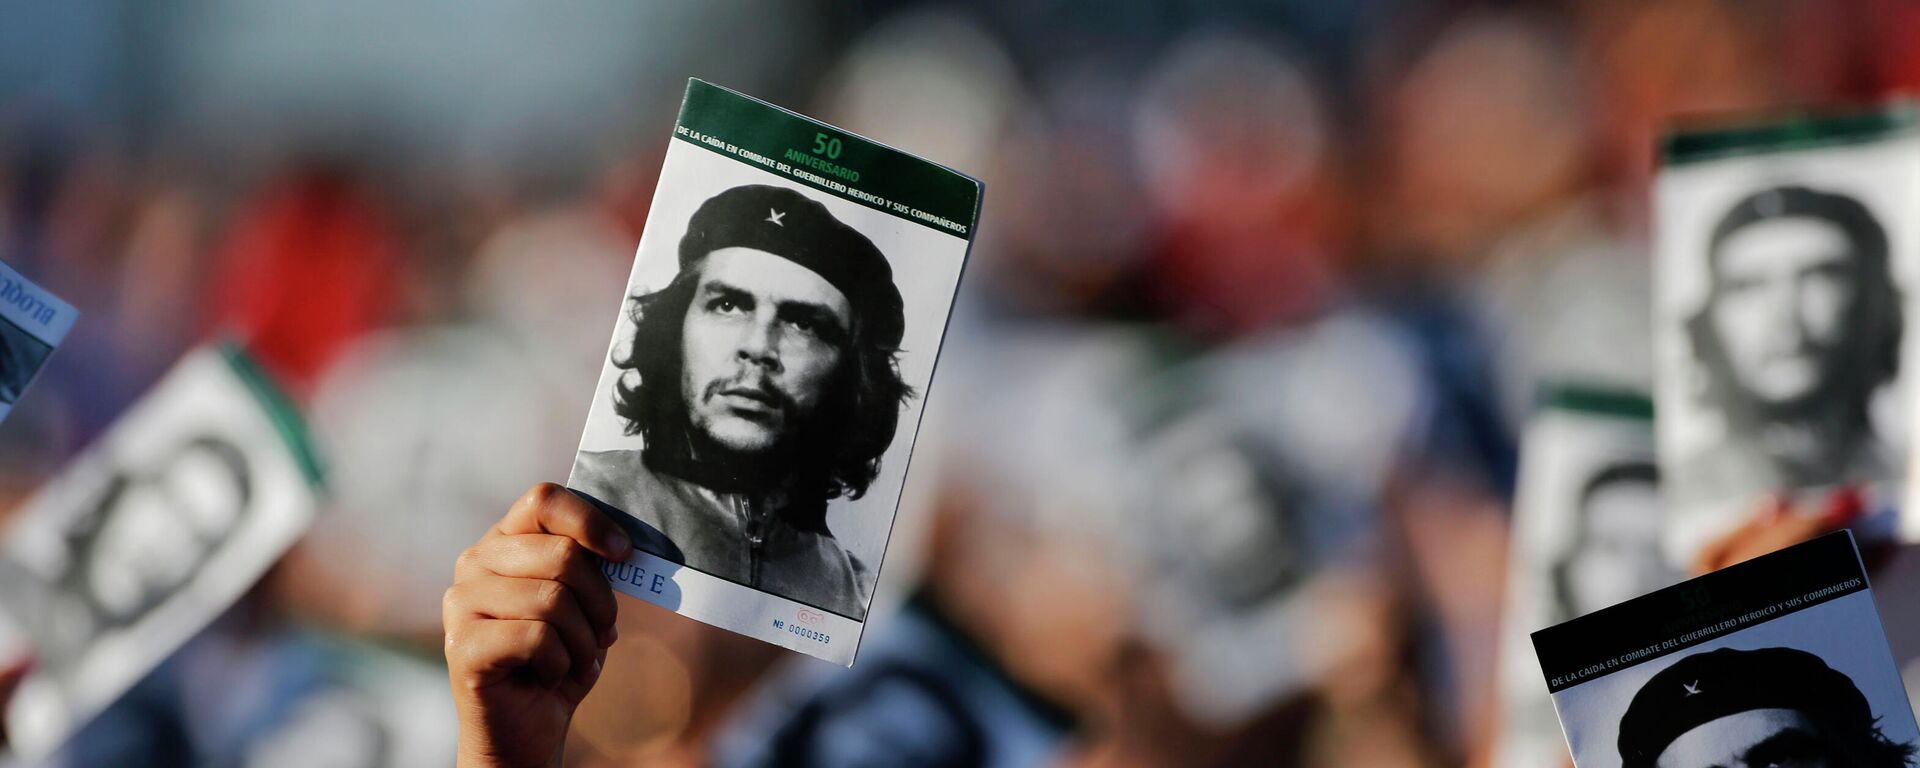 El guerrillero cubano-argentino Ernesto Che Guevara (1928-1967) - Sputnik Mundo, 1920, 08.10.2021